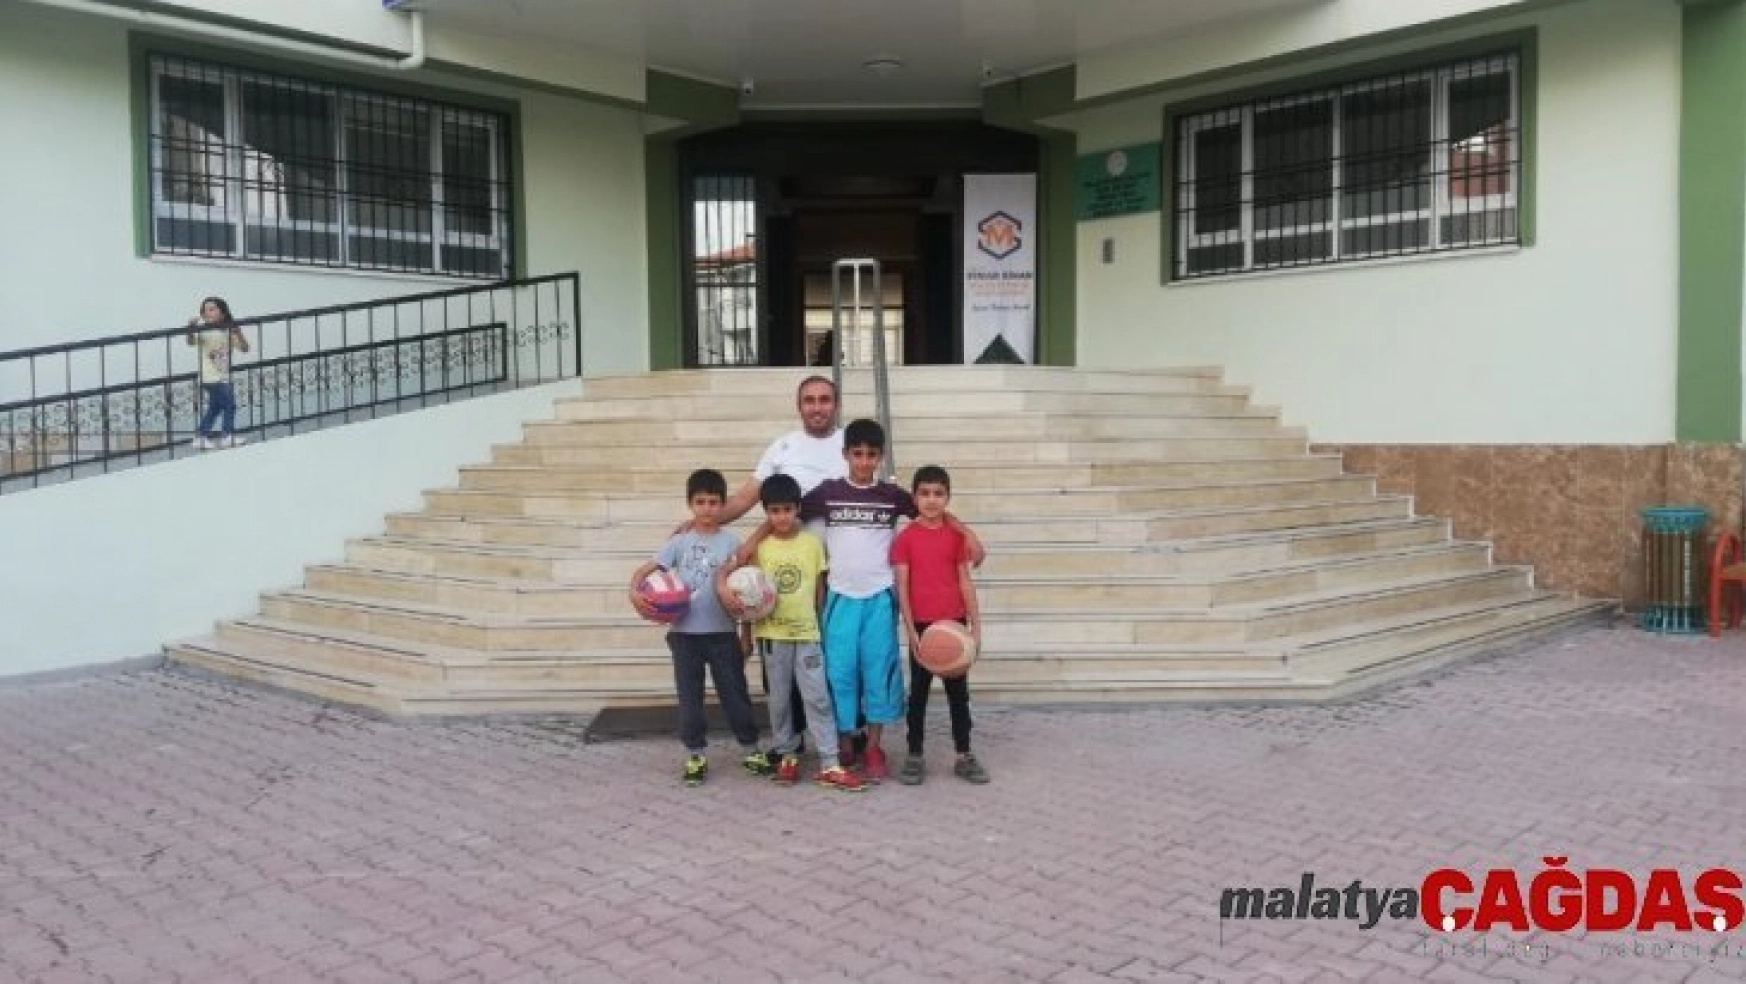 Malatya'da özel okuldan gençlere özel ücretsiz spor